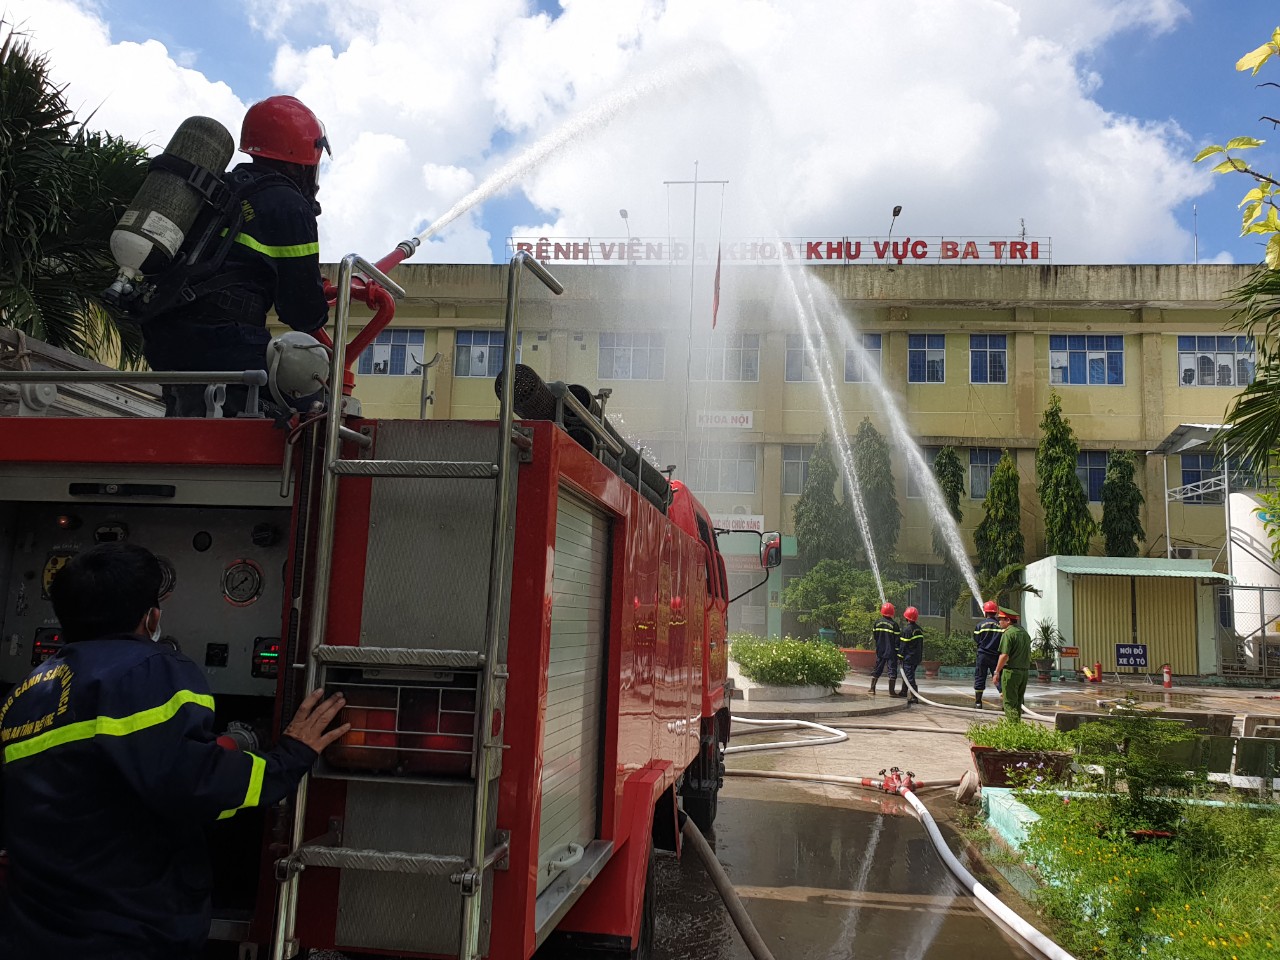 Bệnh viện Đa khoa khu vực Ba Tri diễn tập phòng cháy chữa cháy năm 2022